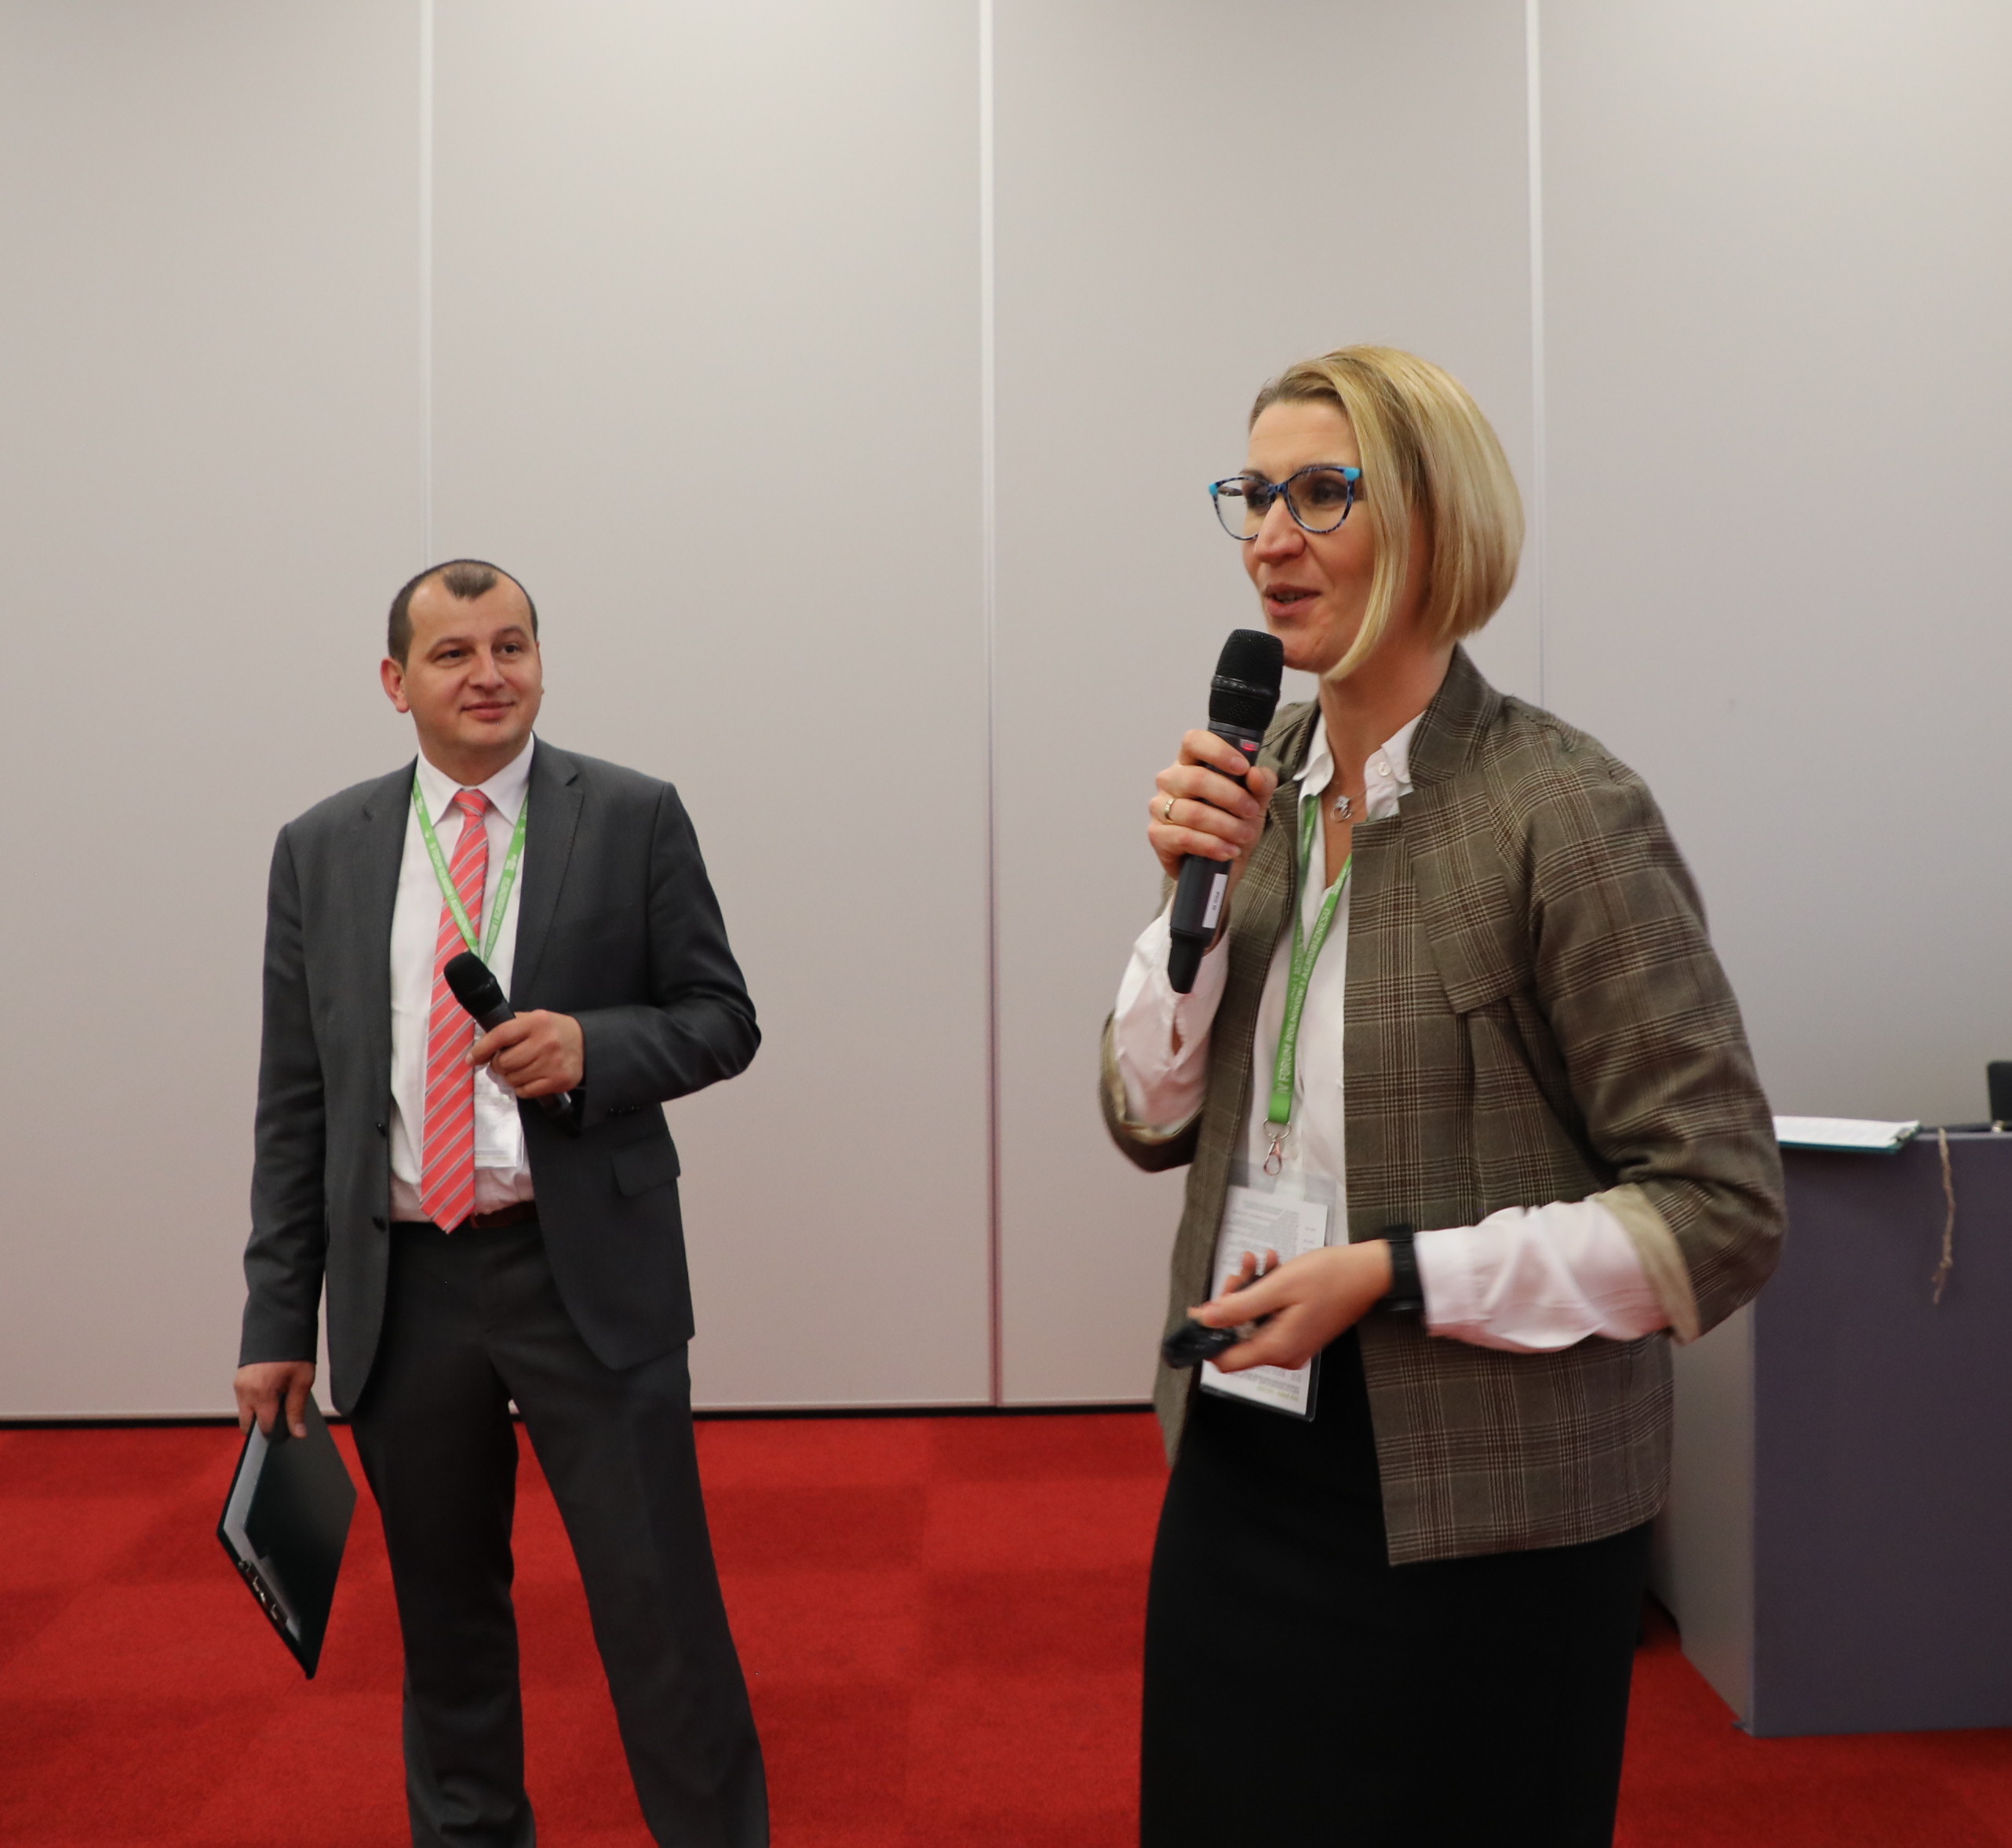 Panel: Uprawa i technika II prowadzili dr Maria Walerowska i Dawid Konieczka - redaktorzy "top agrar  Polska"